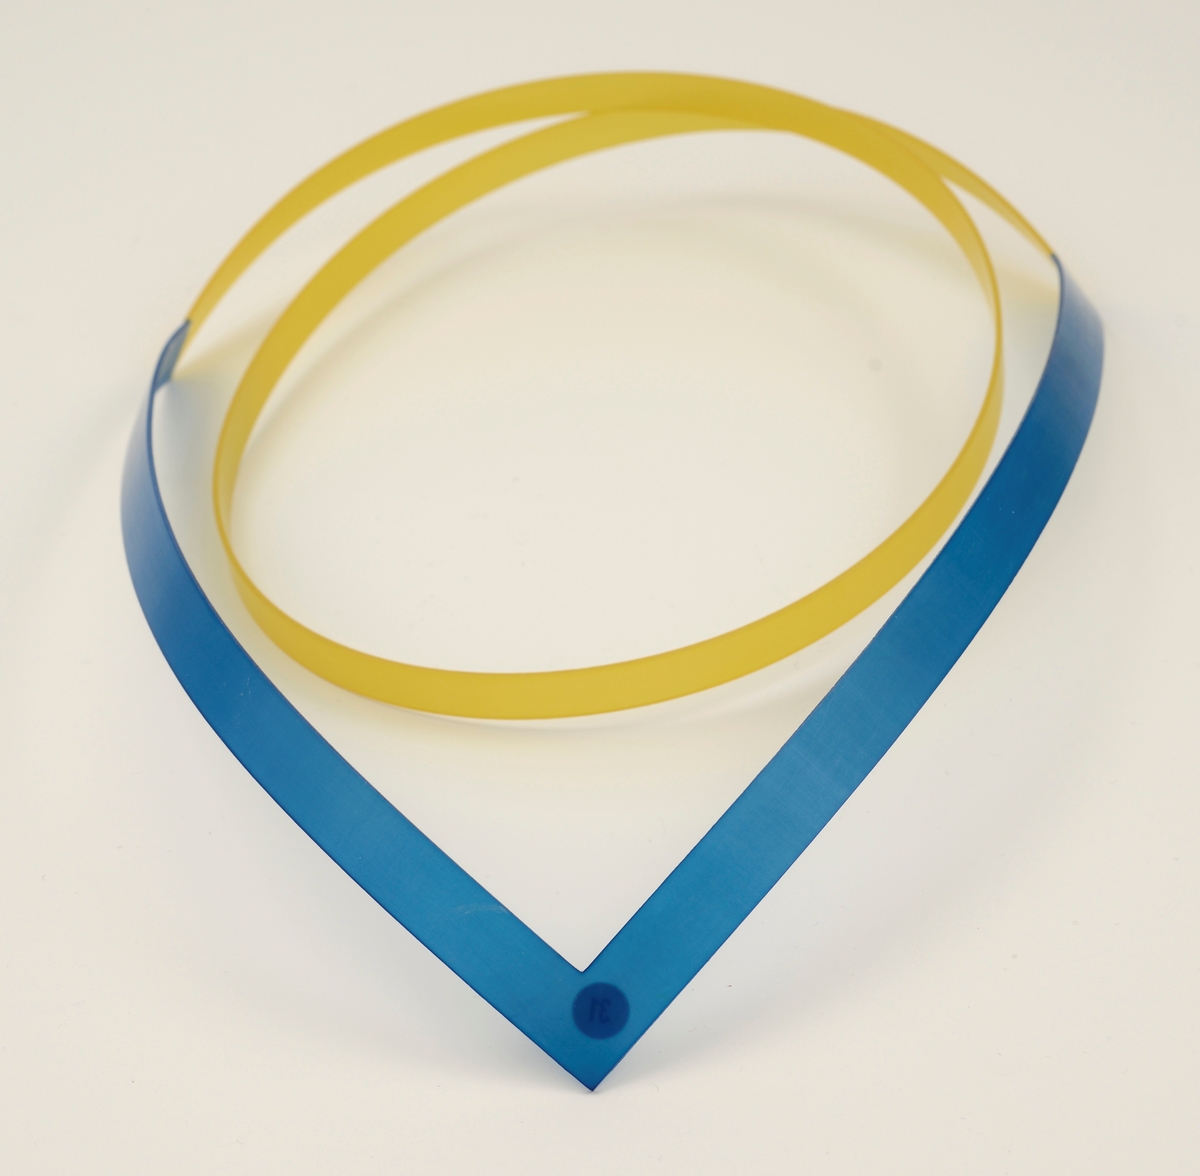 Halssmykke laget av stive nylonbånd som er cirka 1 cm brede. Foran er det et v-formet bånd i blå nylon, til dette er det festet et gult bånd som slynger seg i en spiral.